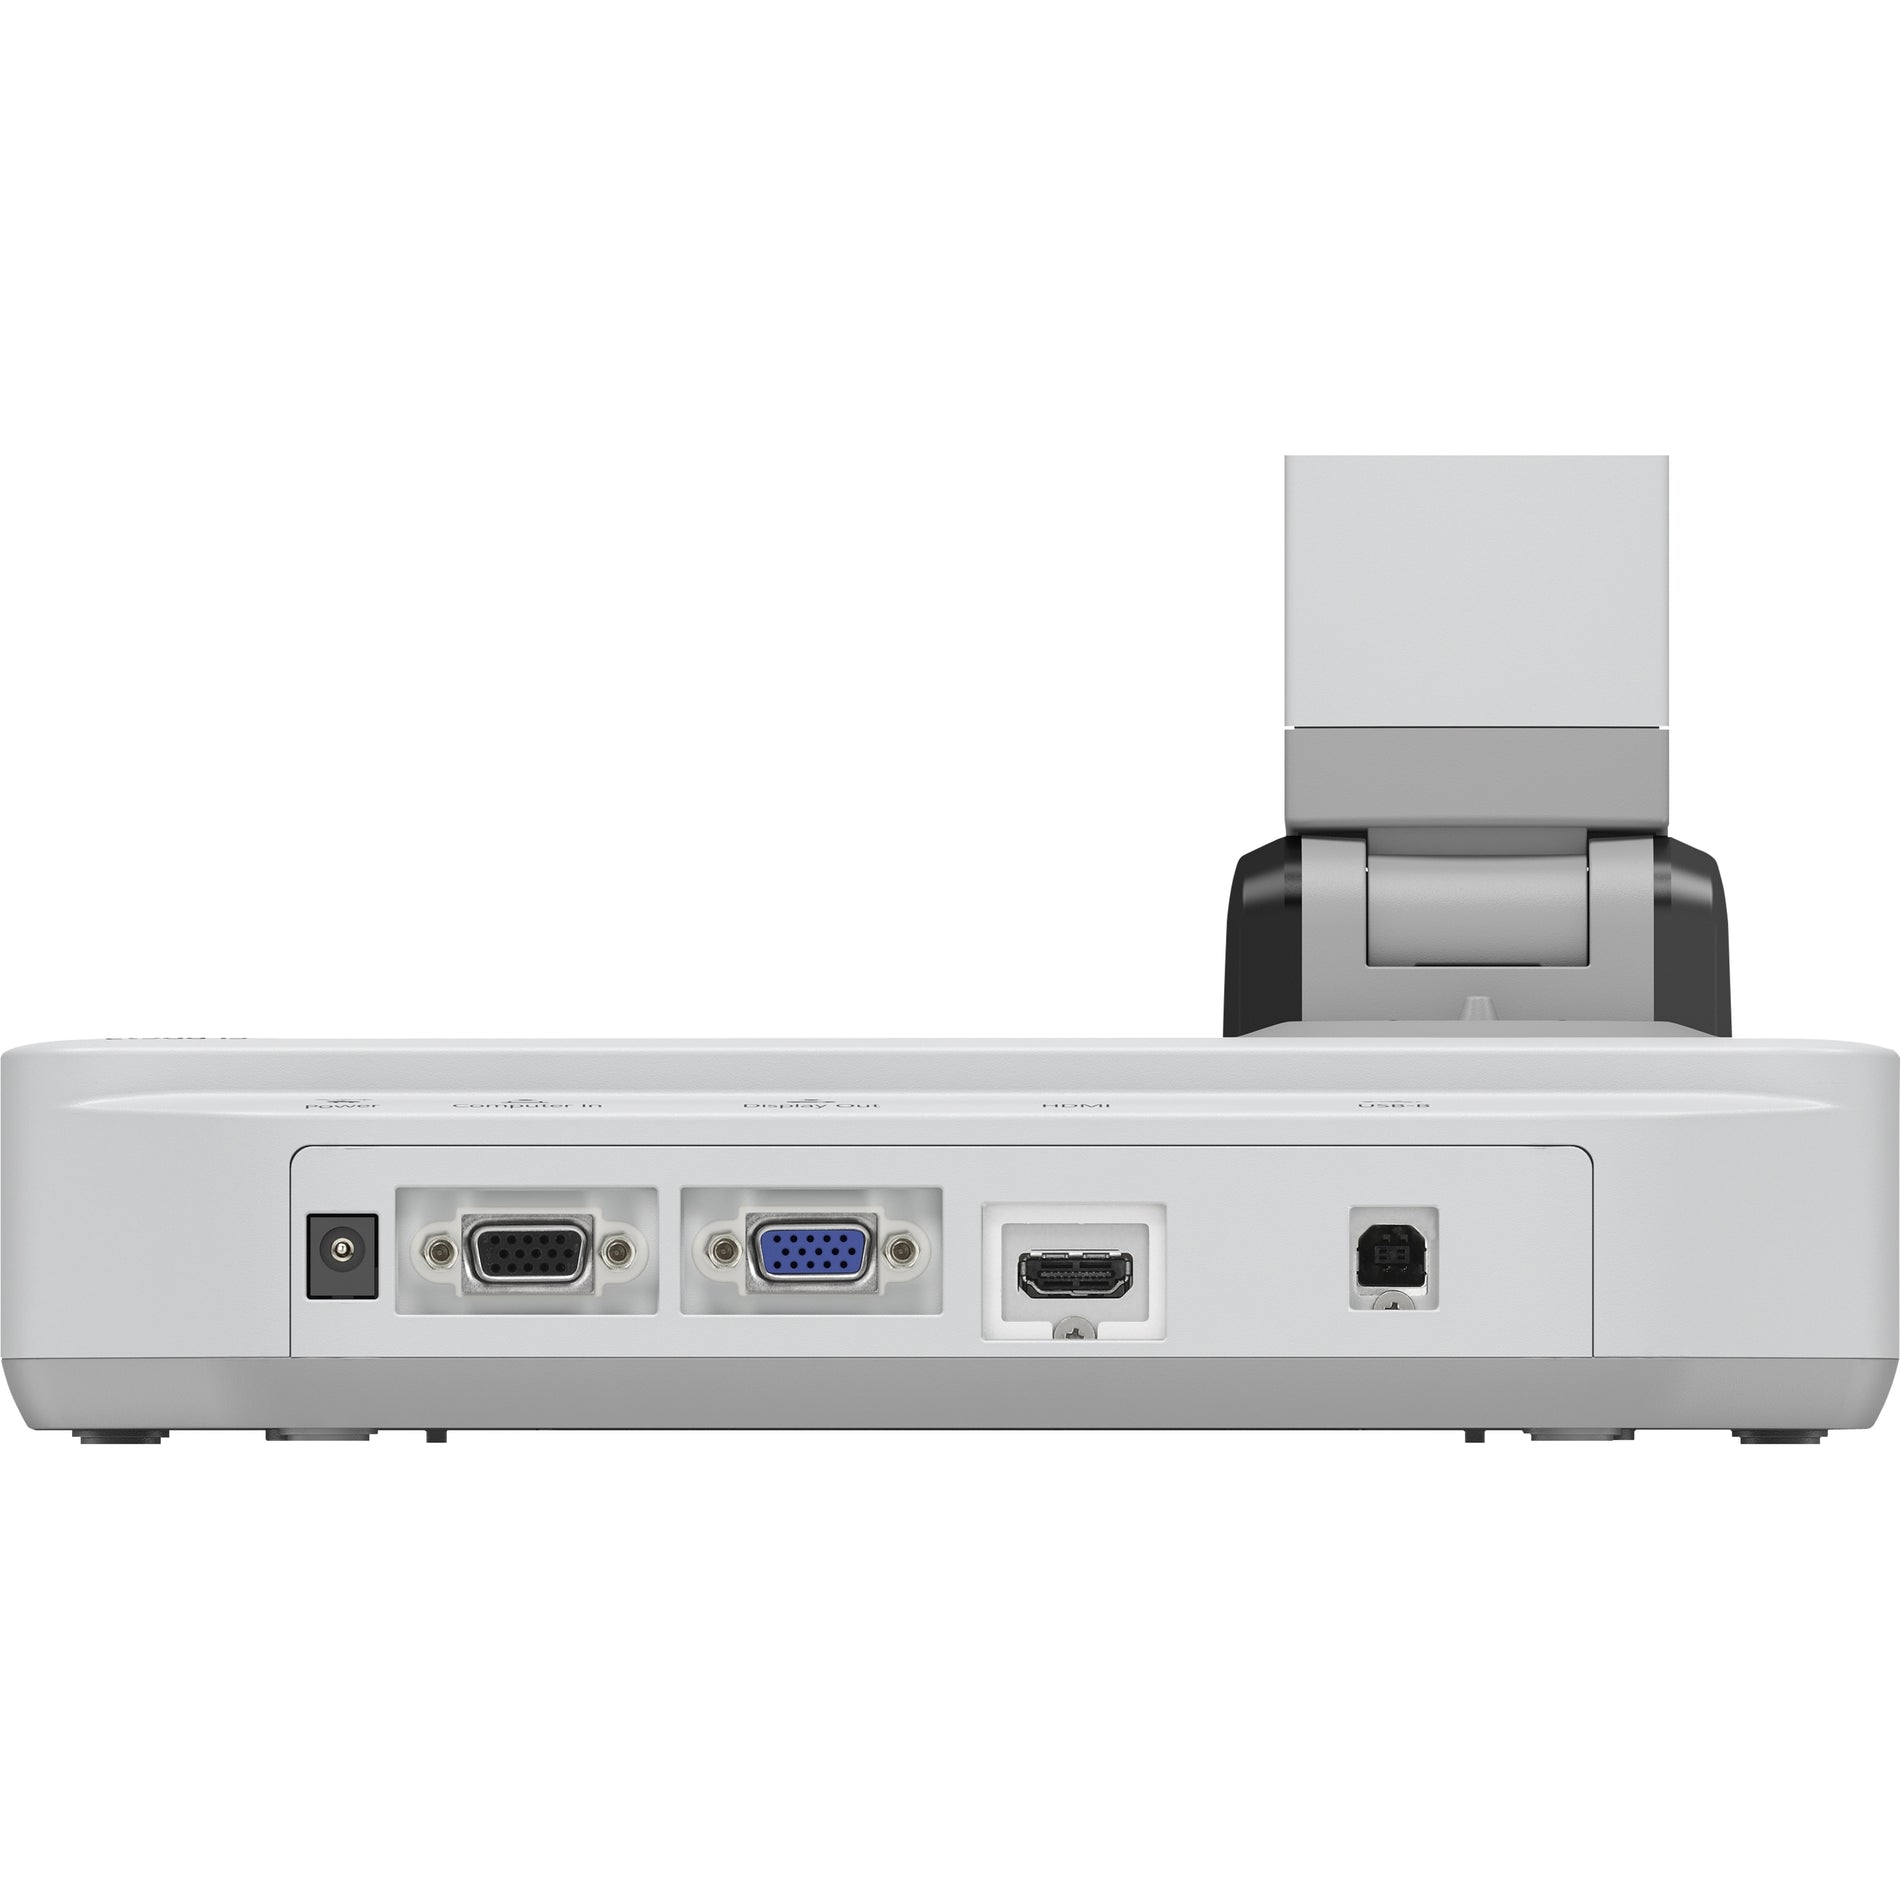 ايبسون V12H758020 DC-21 وثيقة الكاميرا، 2 ميجابيكسل، توصيل VGA/HDMI/USB